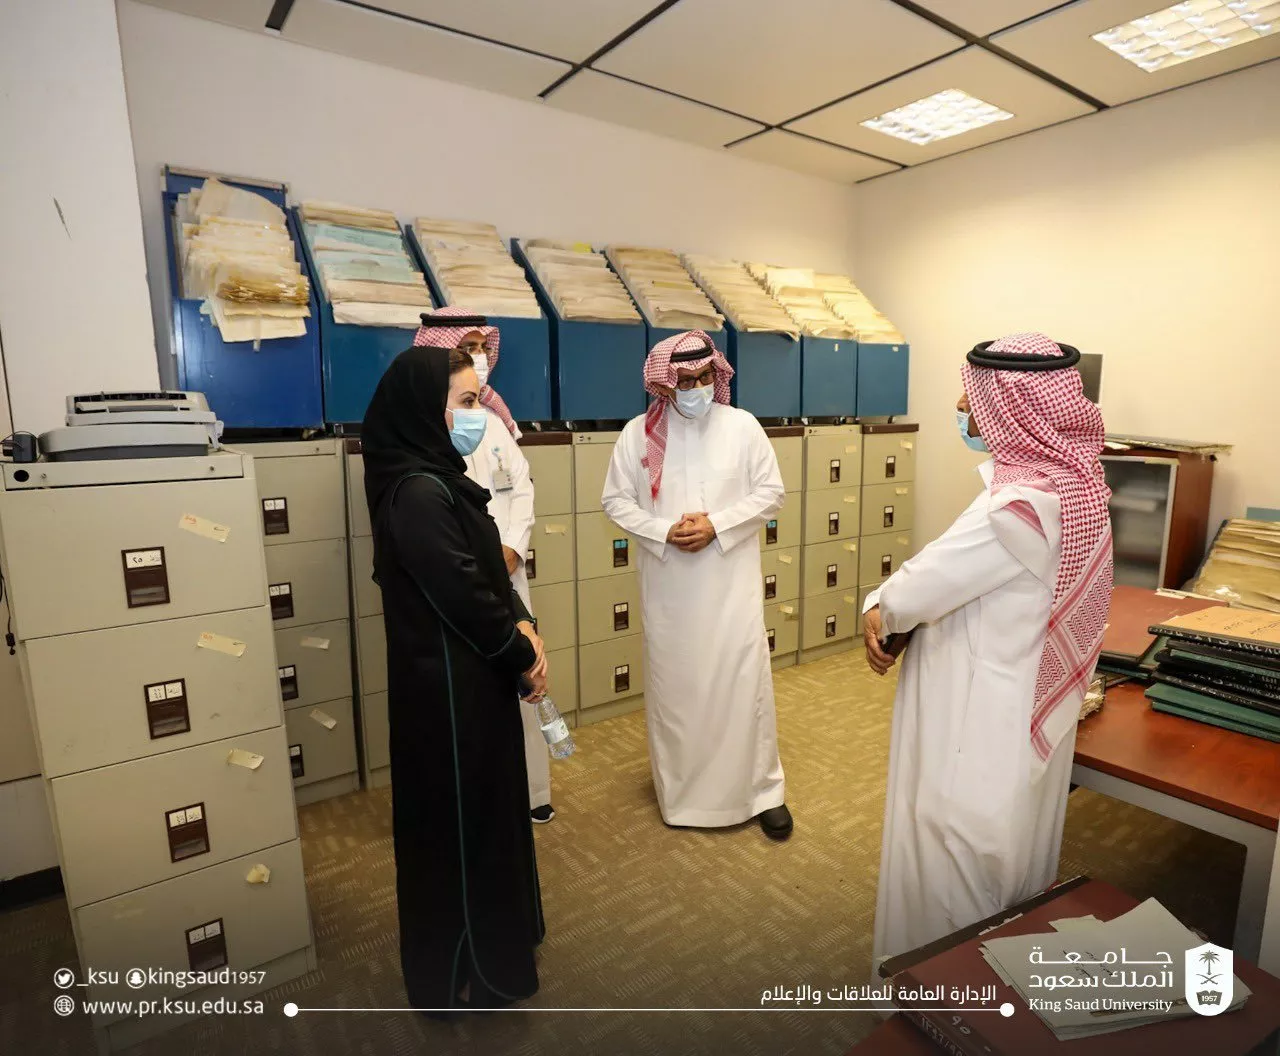 ما هي أبرز تخصصات جامعة الملك سعود؟